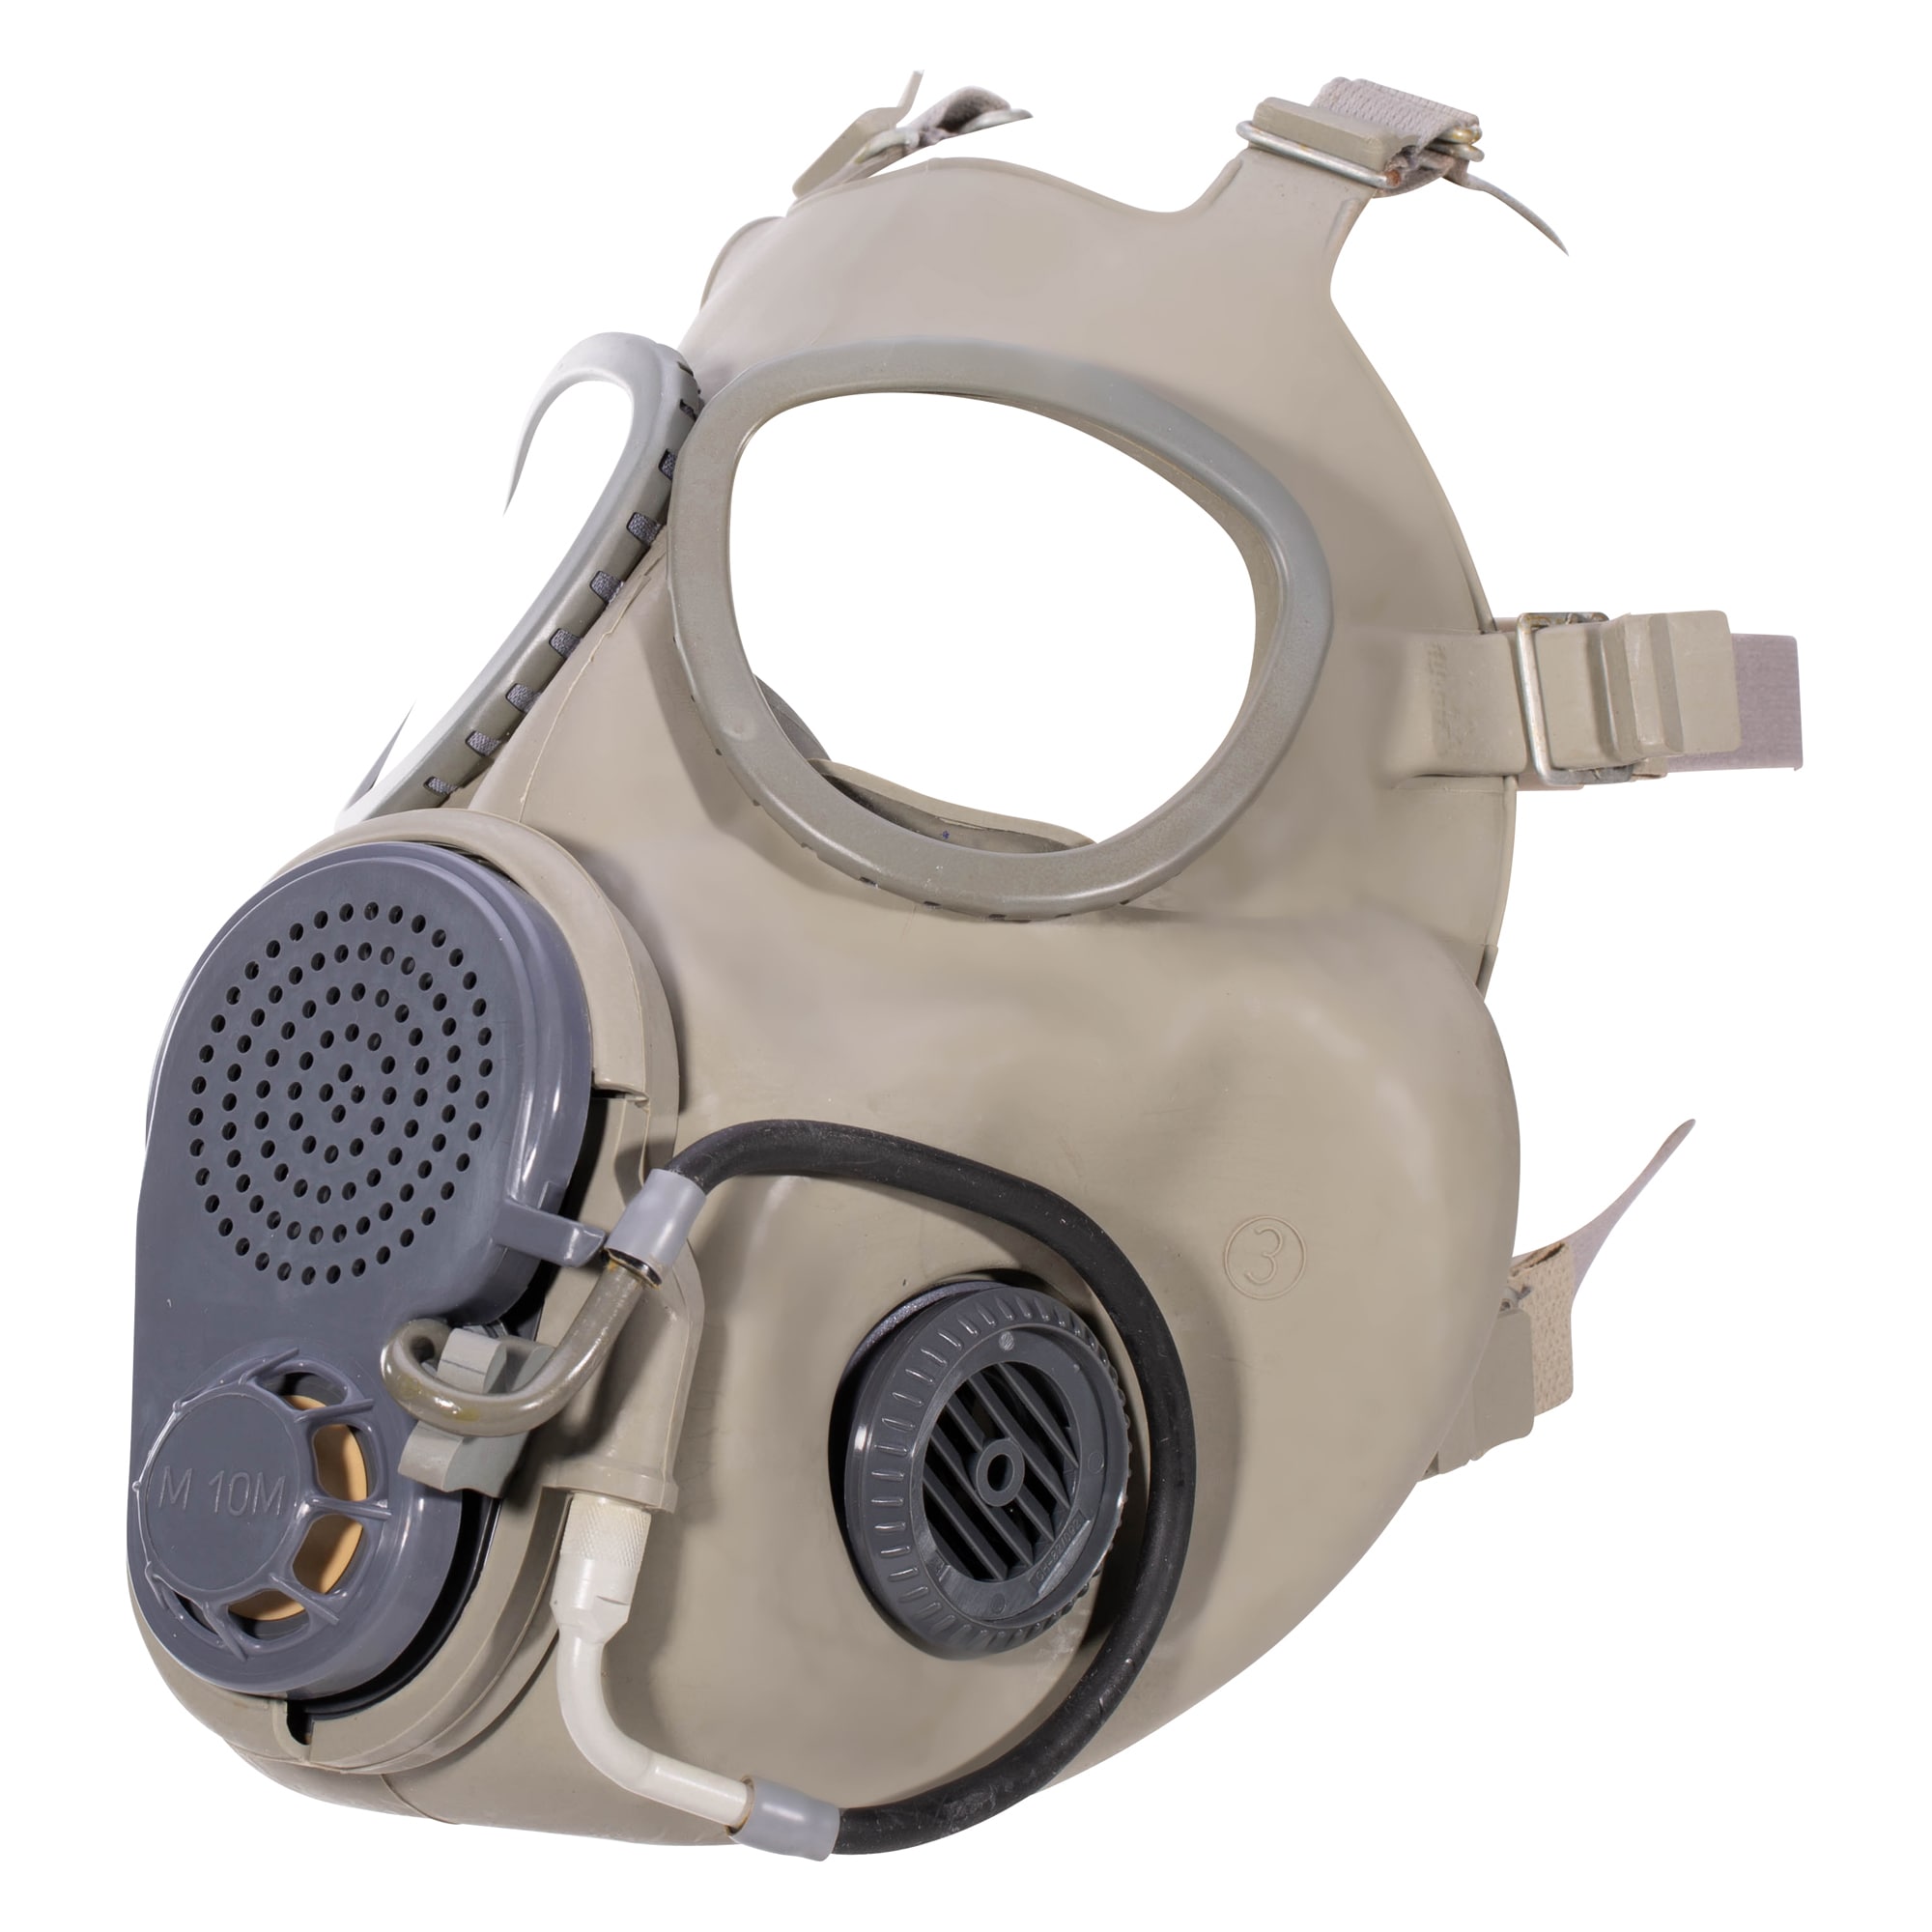 masque à gaz avec casque pour déguisement